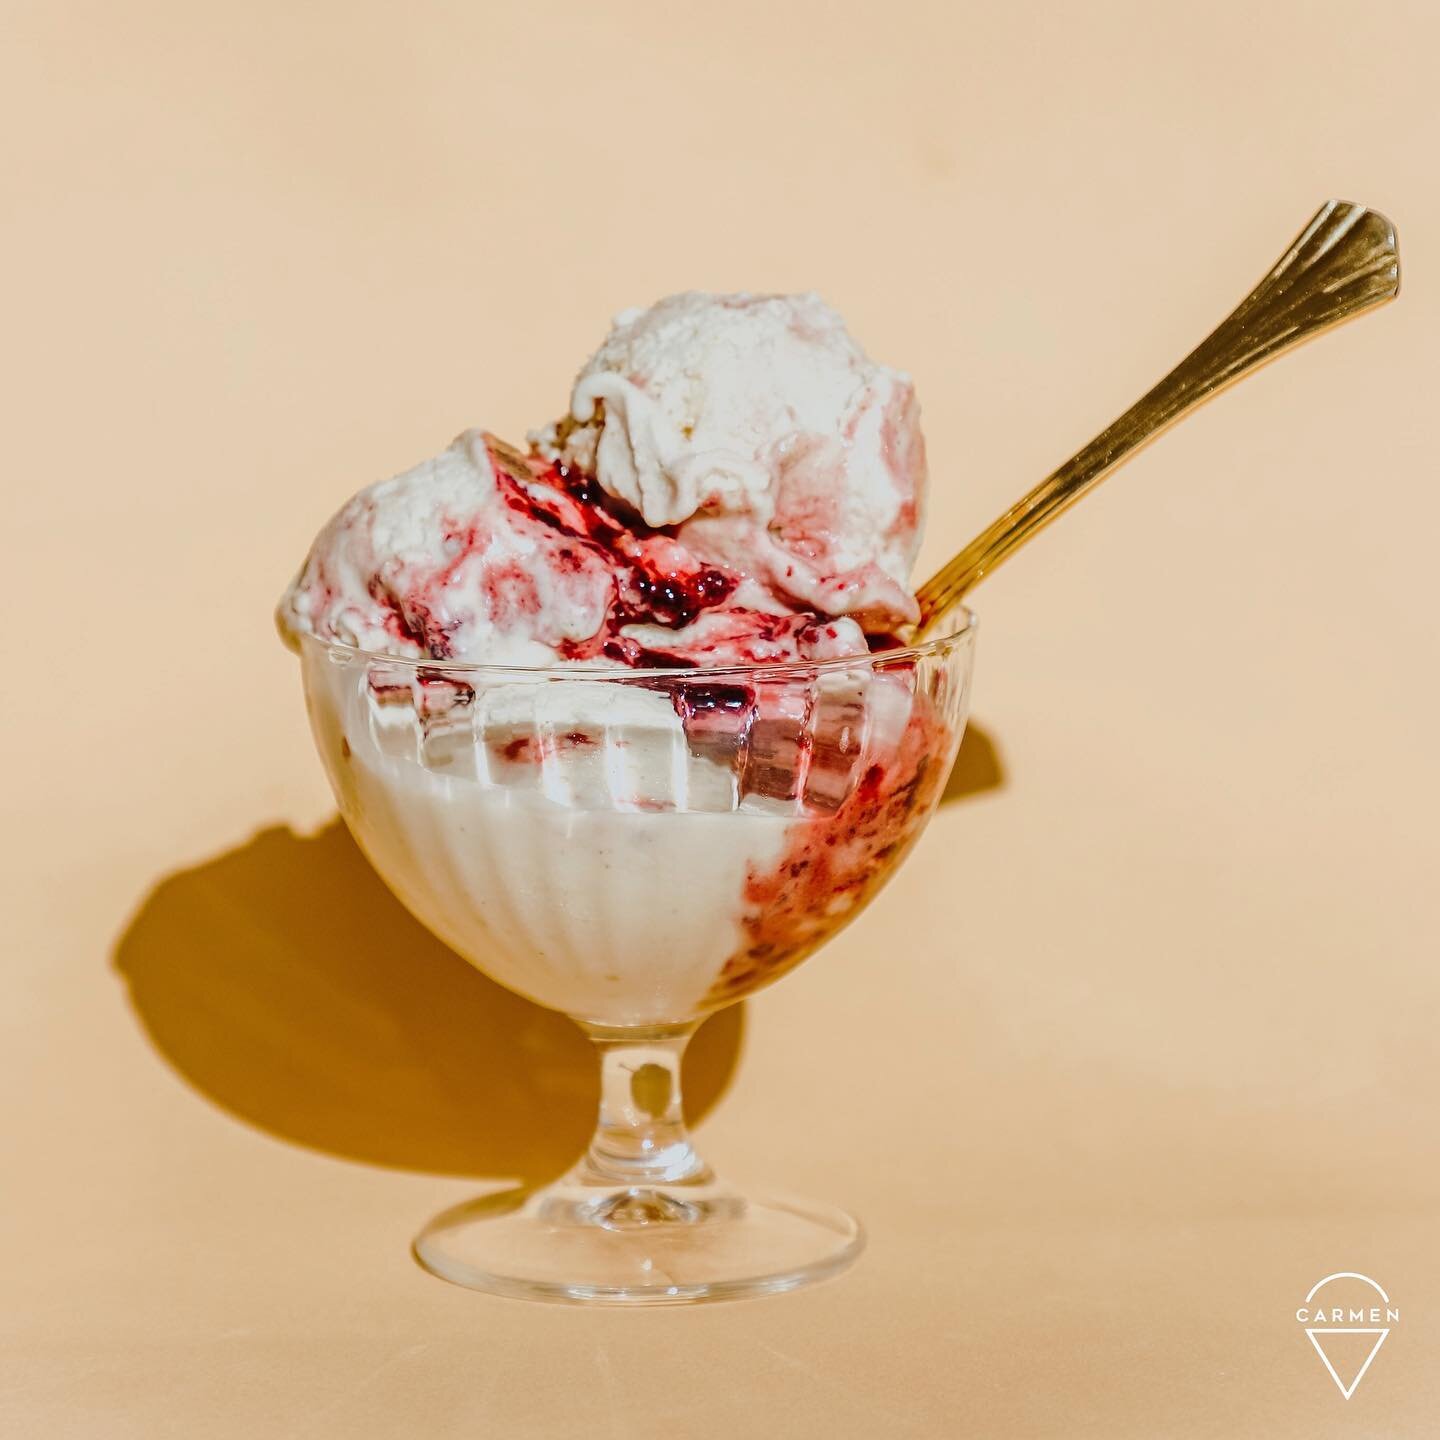 Avete mai assaggiato le nostre coppe gourmet?
Potete scegliere tra tanti accostamenti selezionati per voi oppure creare il vostro personale percorso di degustazione del gelato Carmen. 🍦😋
Interessante, vero?

#CarmenGelato #gelato #gelatoartigianale